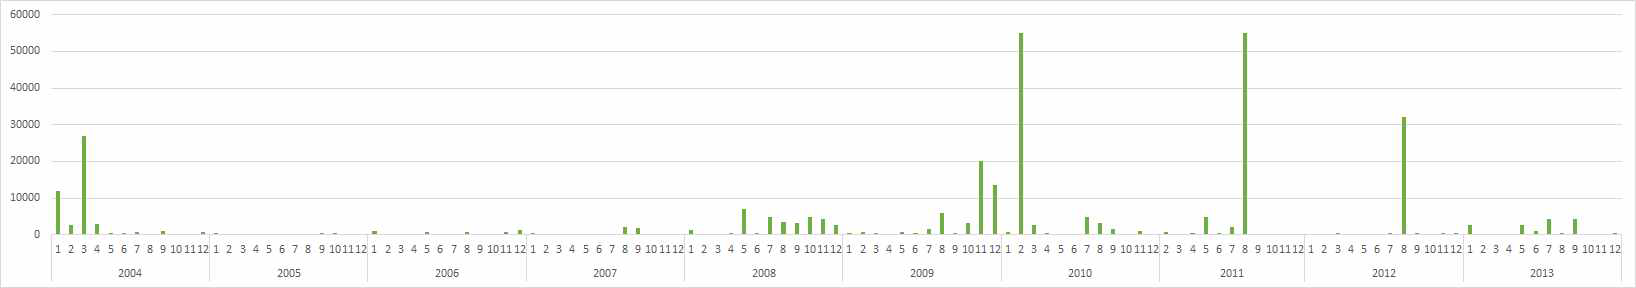 환경부 수질측정망 (구의)의 최근 10년간 총대장균군 분포